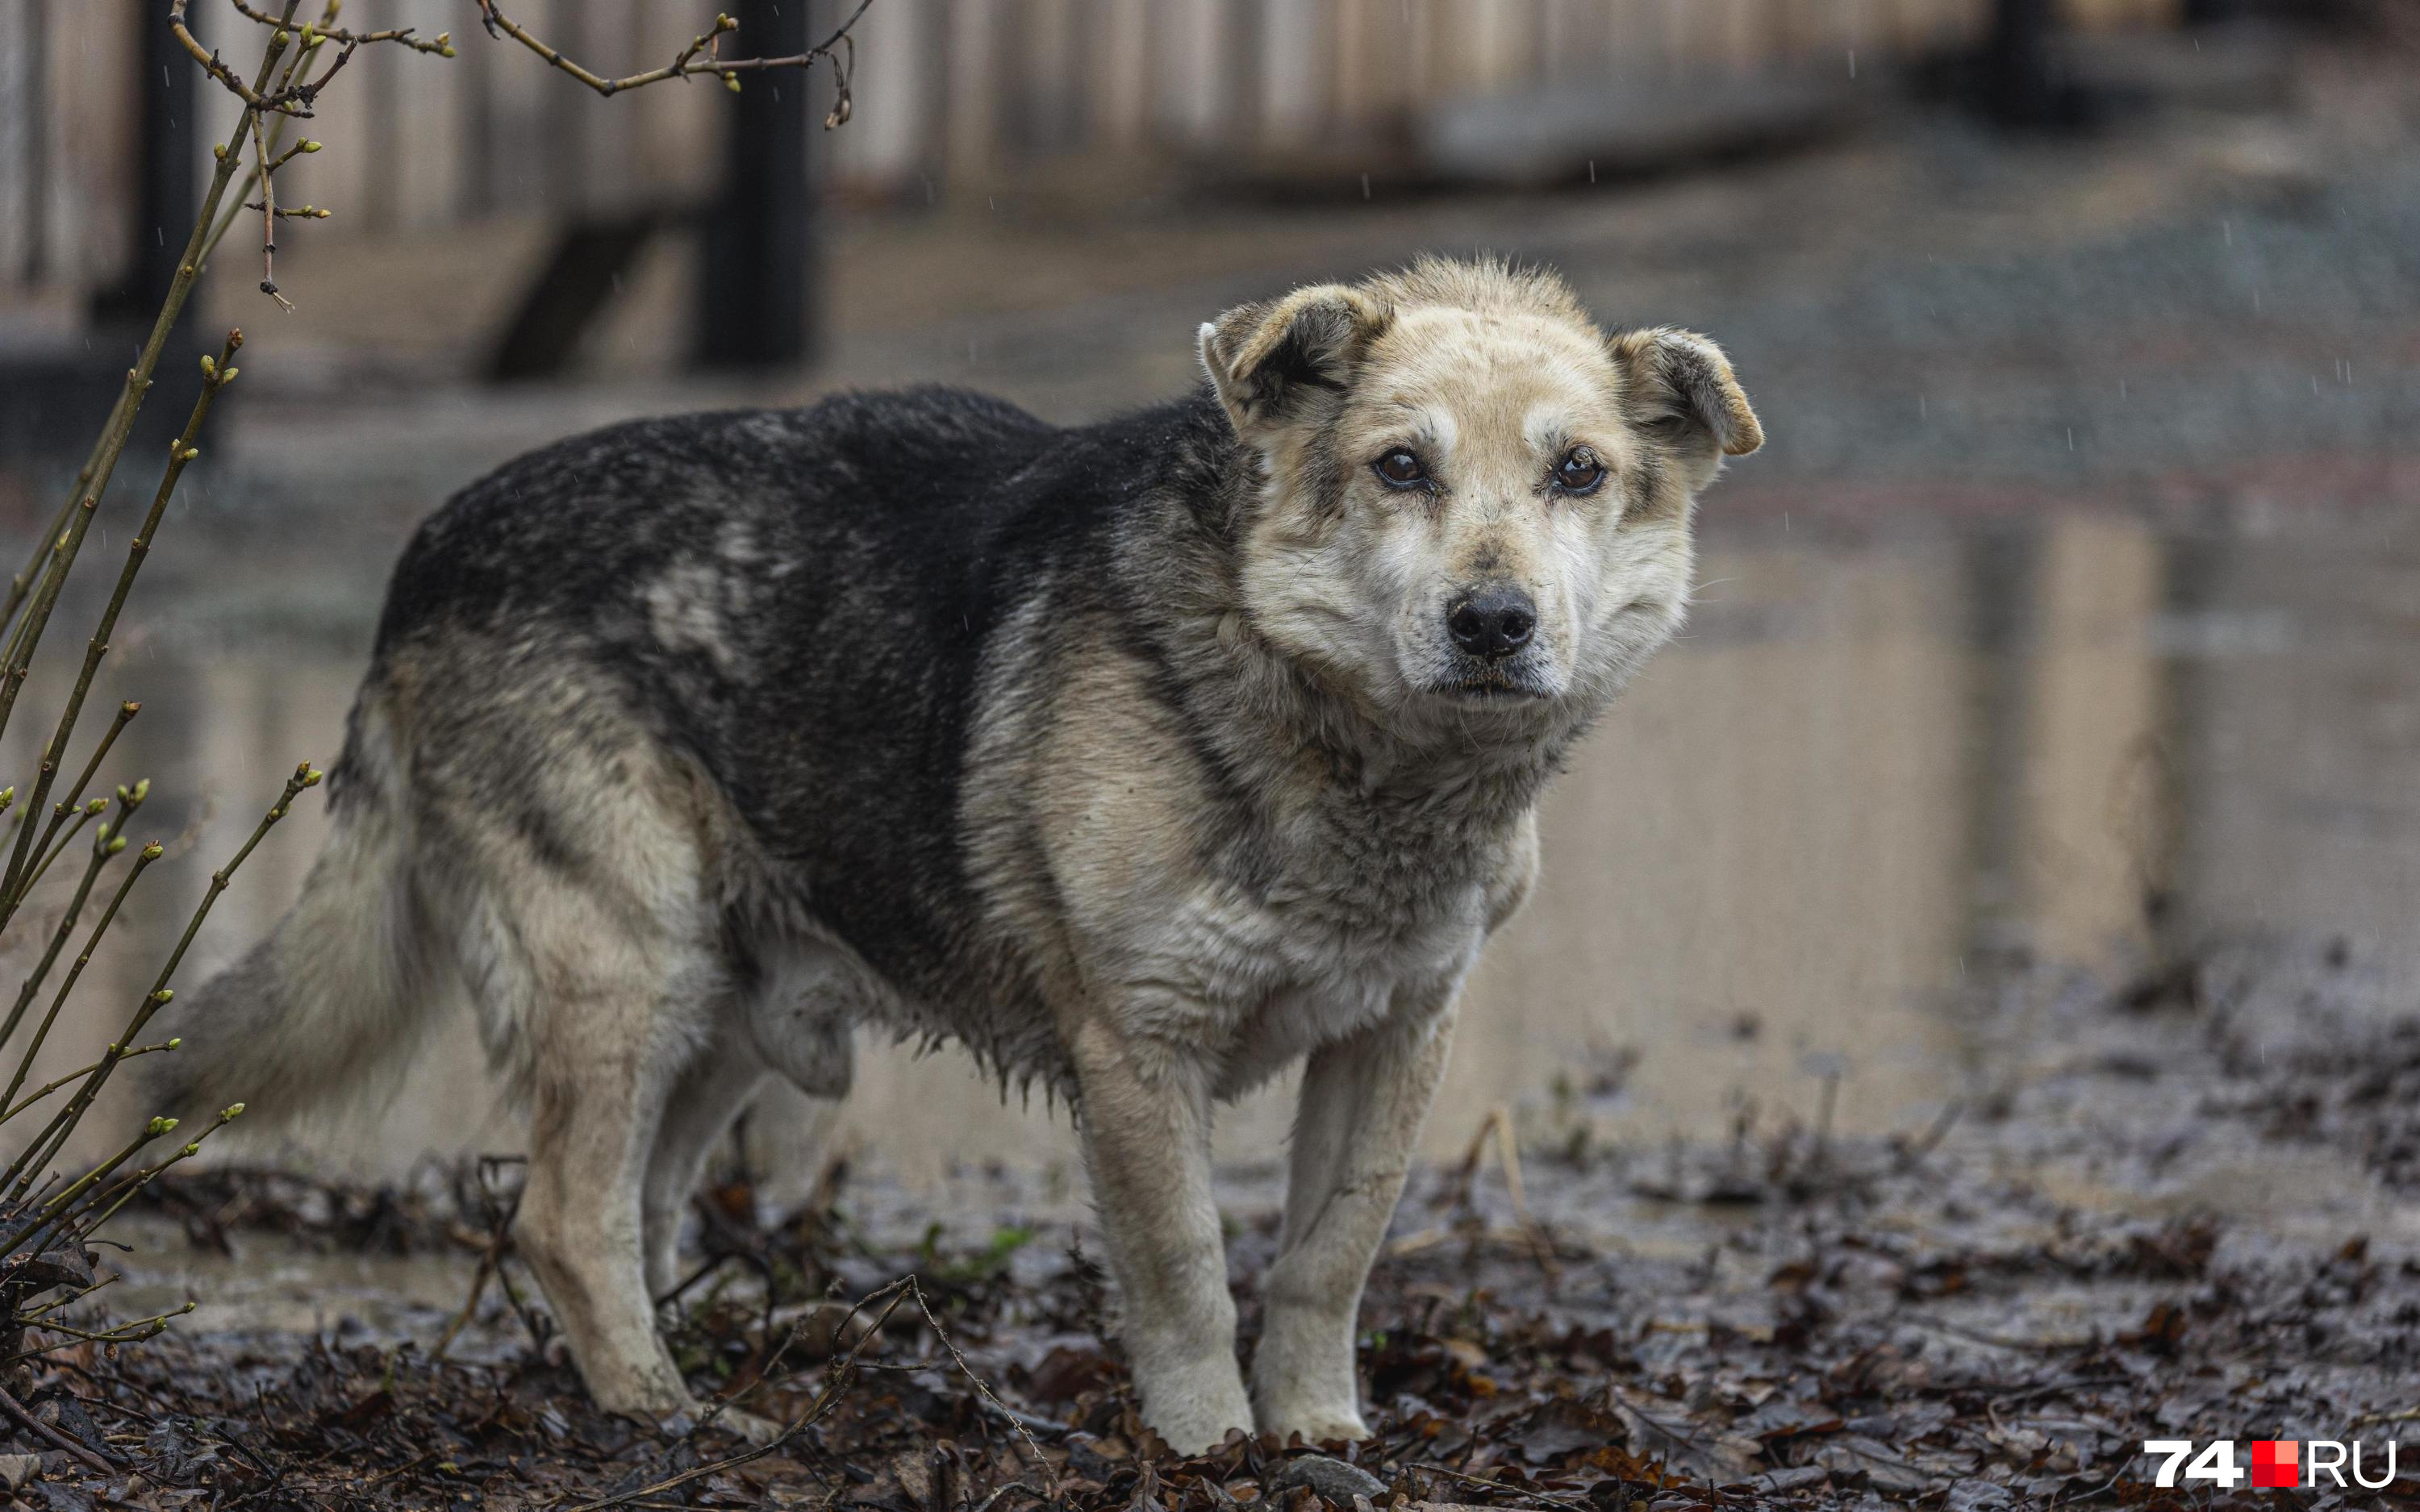 Сити-менеджер Читы не смогла сказать, освободит ли город эвтаназия собак